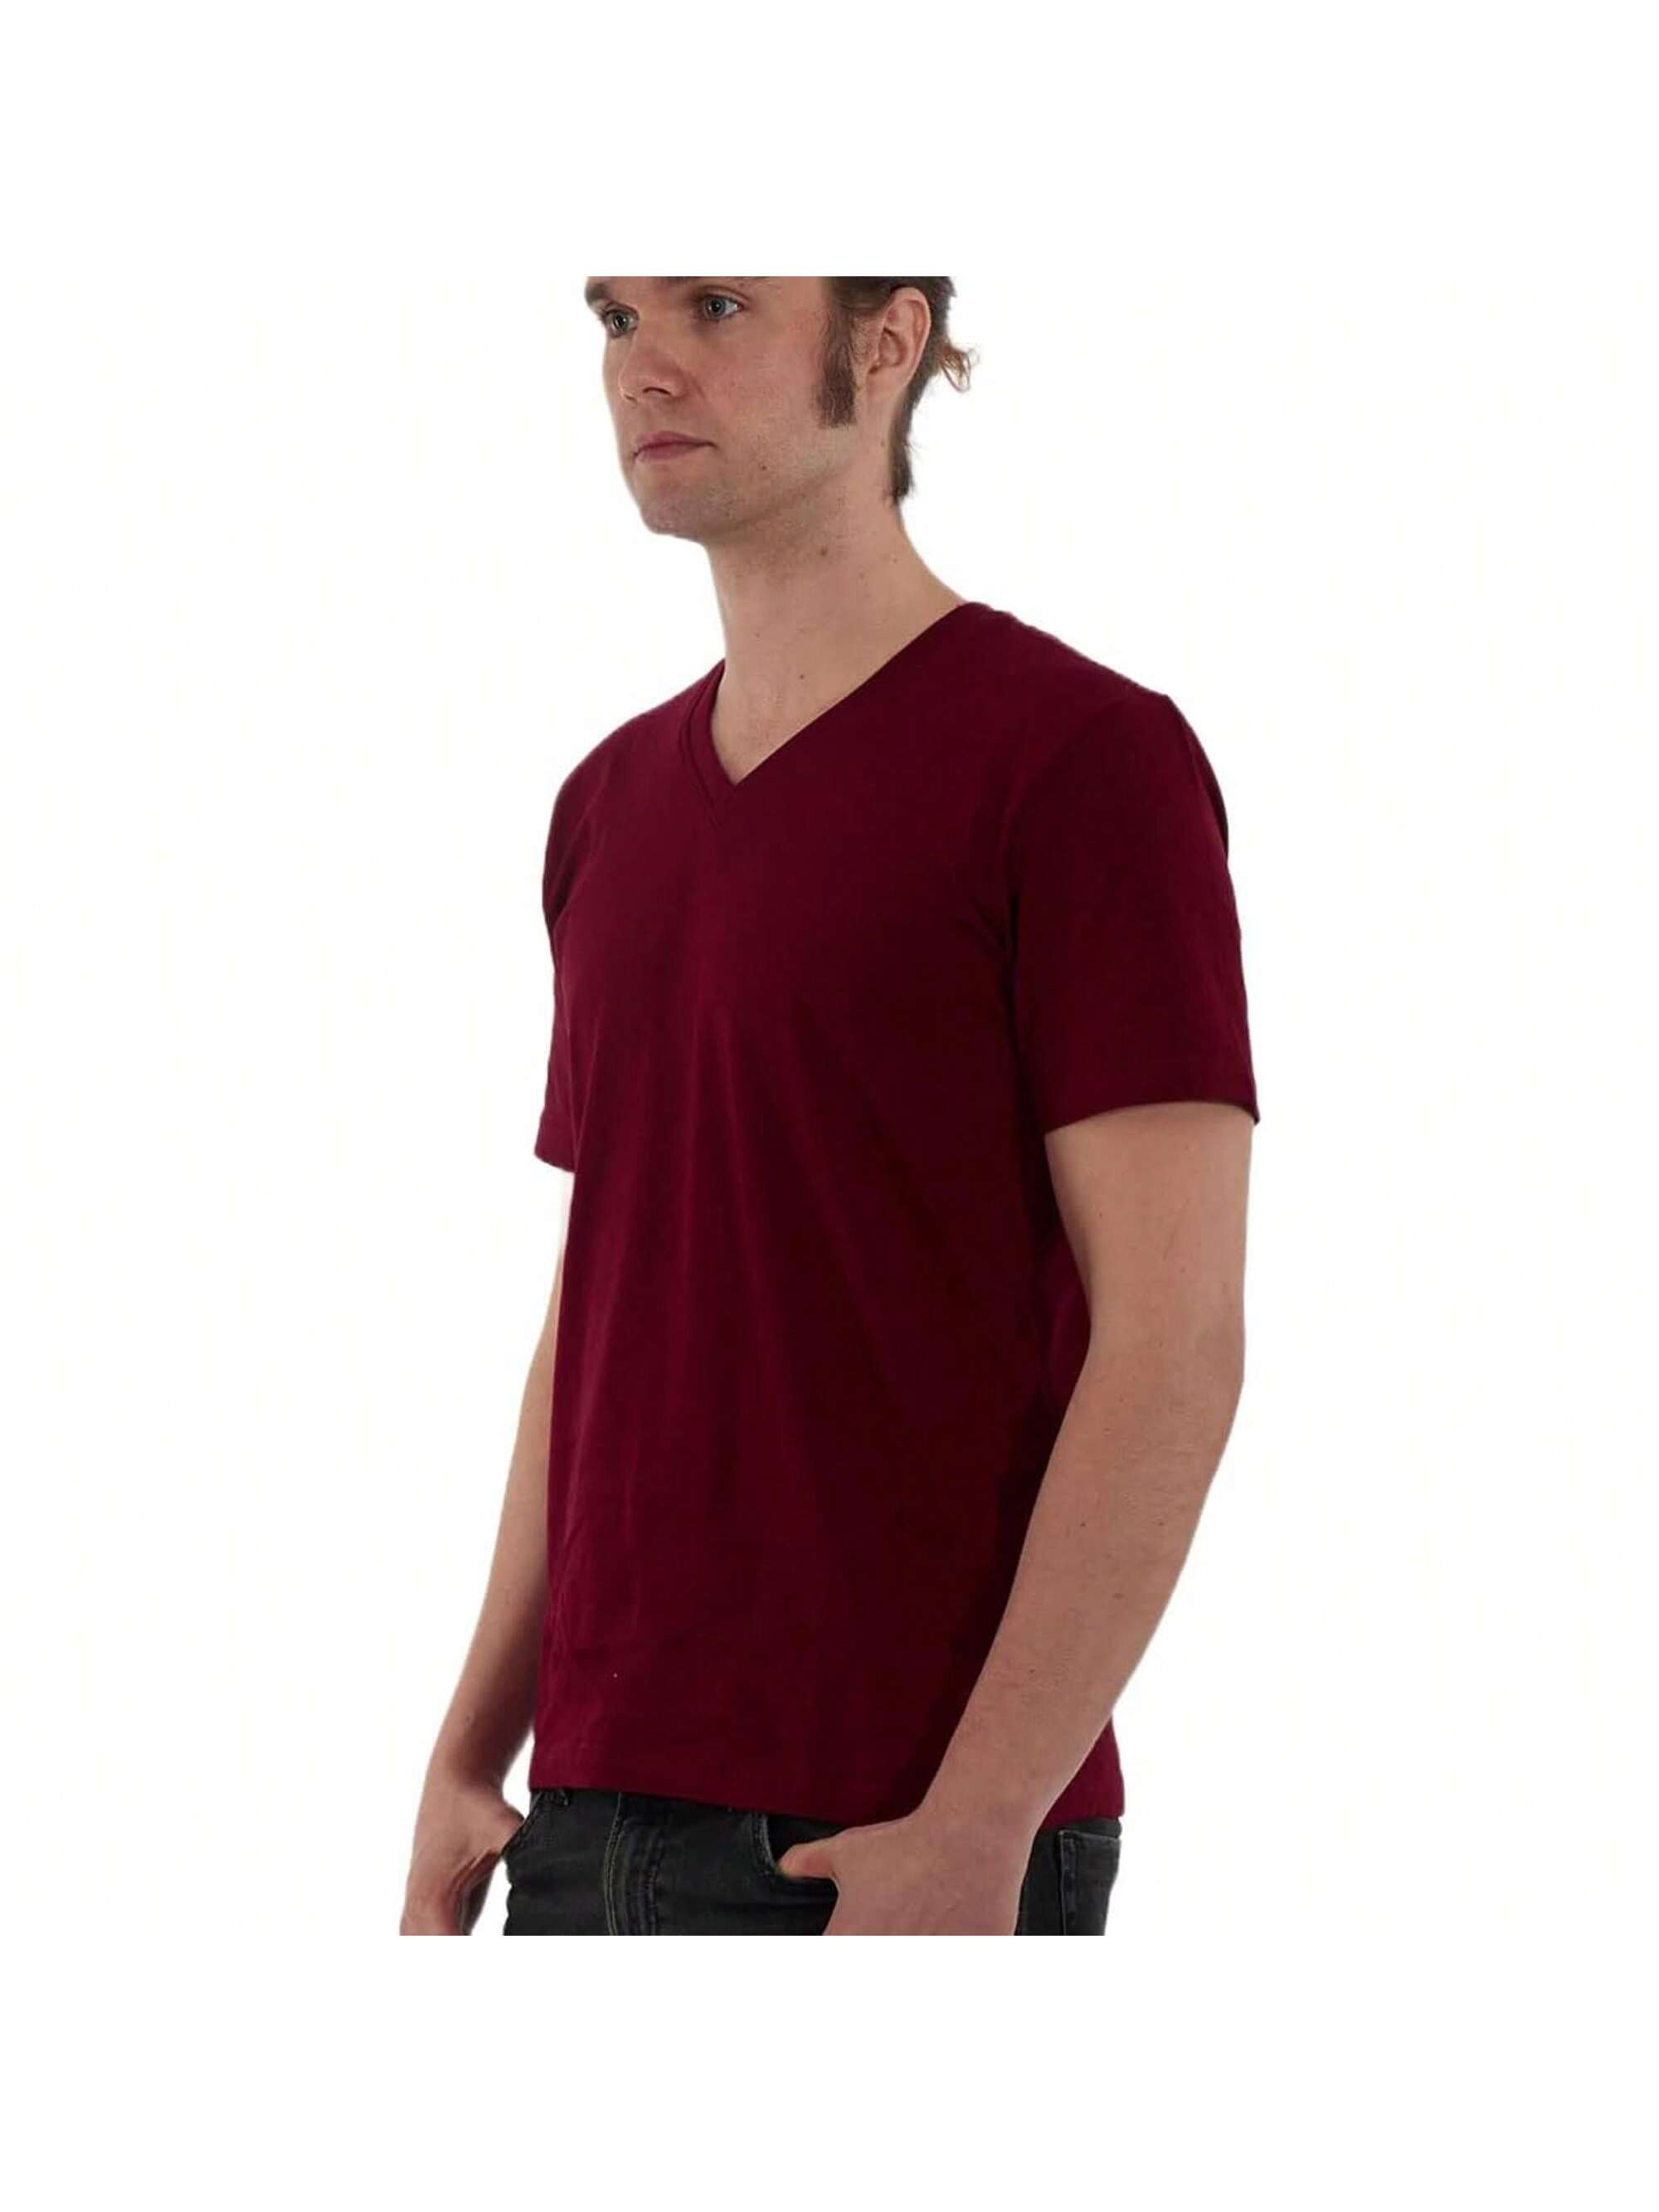 Мужская хлопковая футболка премиум-класса с v-образным вырезом Rich Cotton BLK-M, бургундия перчатки sherwood code v sr blk red 13